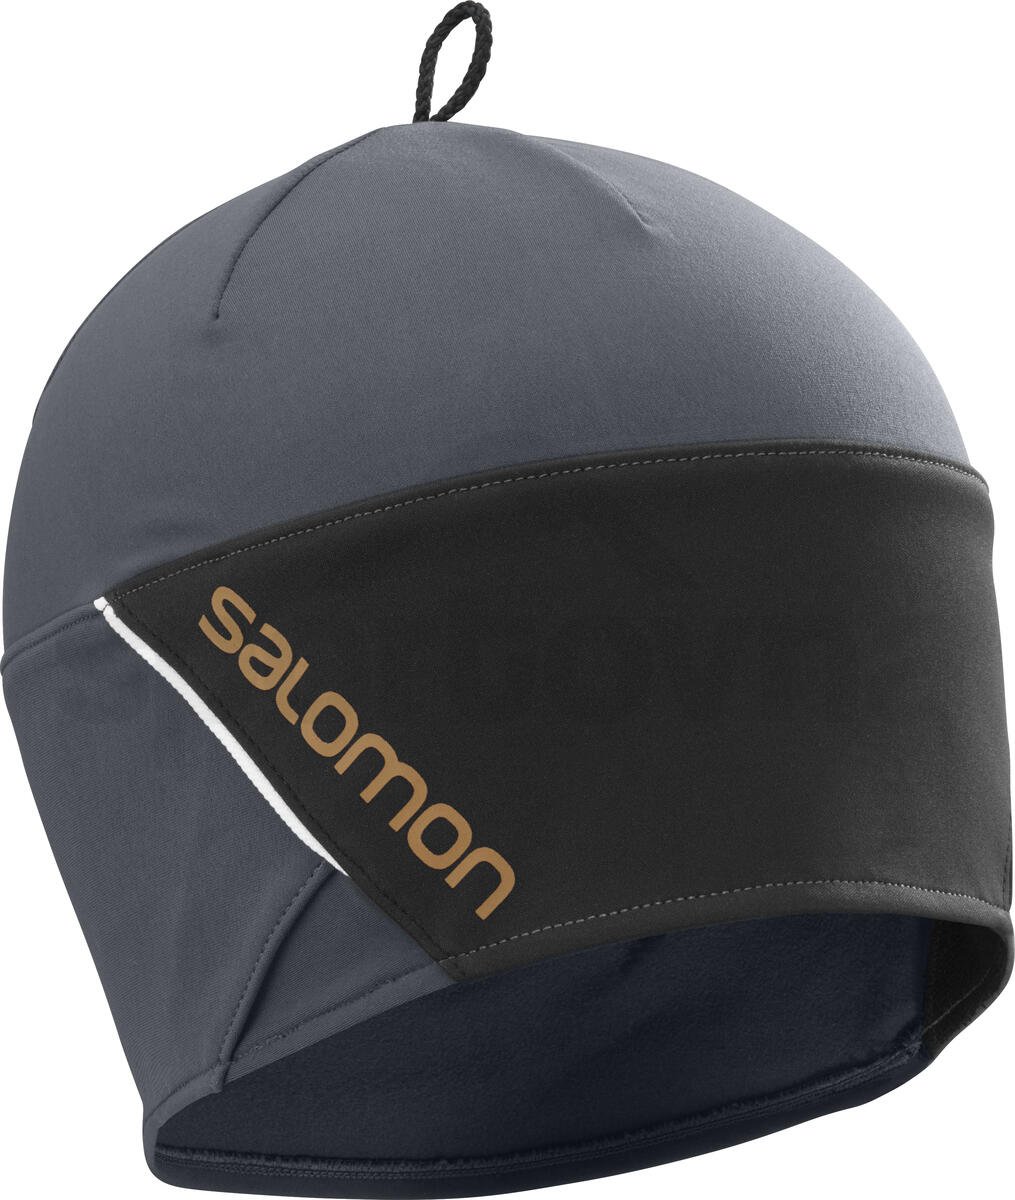 Čepice Salomon RS BEANIE - šedá/černá